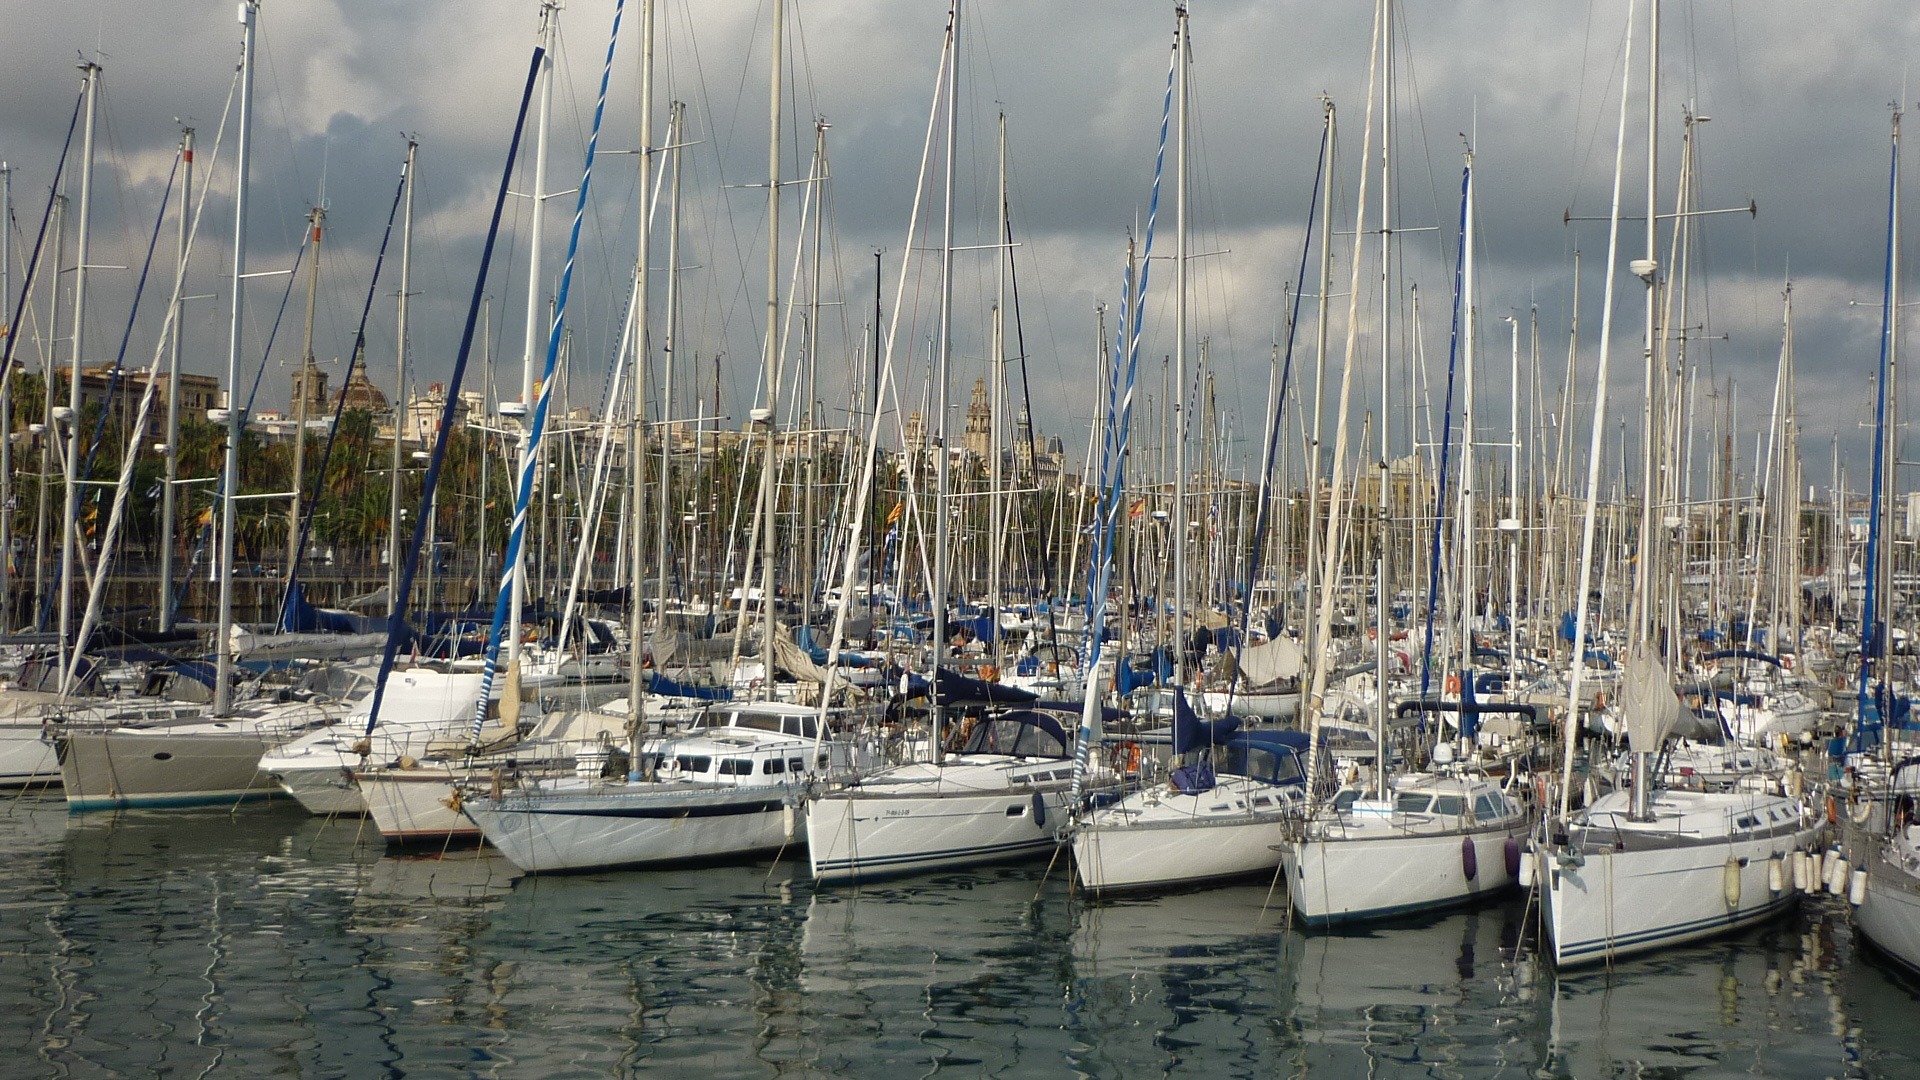 Free Images : sea, dock, boat, vehicle, mast, yacht, harbor, marina ...